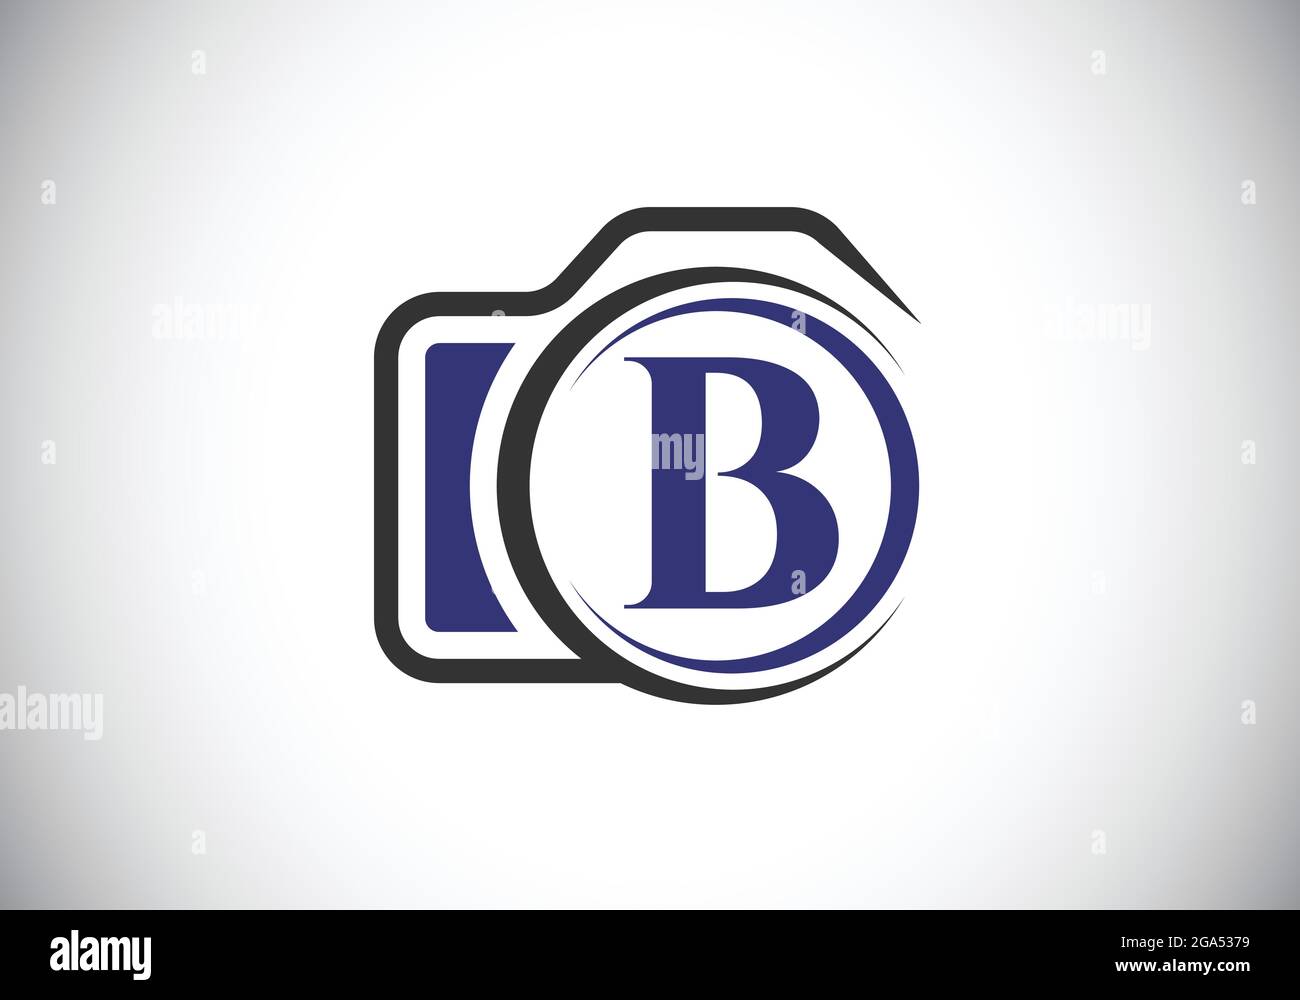 Lettera iniziale del monogramma B con l'icona di una telecamera. Immagine vettoriale del logo fotografico. Design moderno del logo per il settore della fotografia e l'azienda Illustrazione Vettoriale